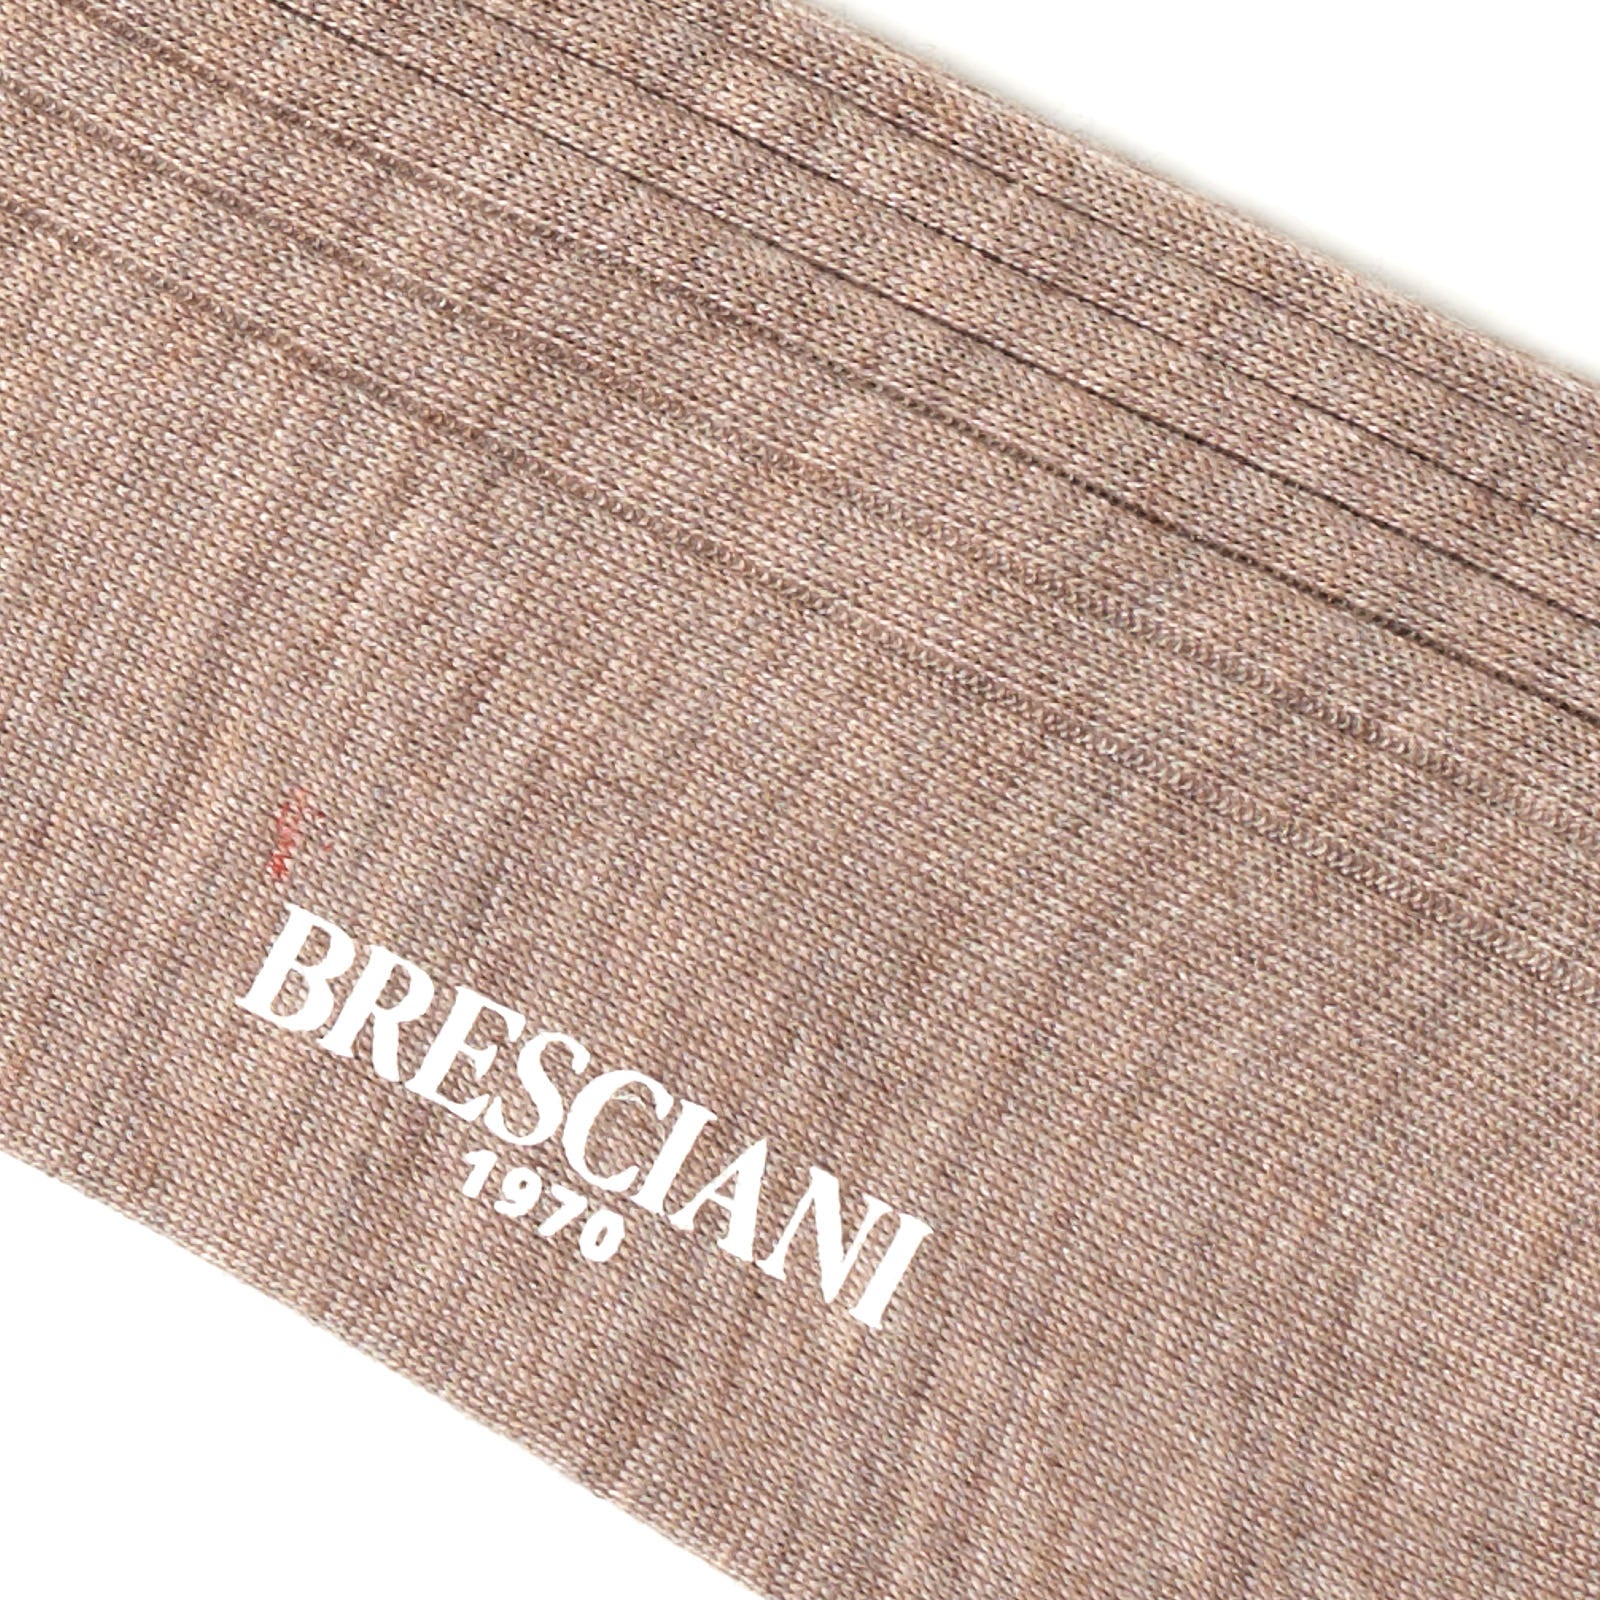 BRESCIANI Luxury Collection "Quirinale" Cashmere-Silk Mid Calf Length Socks M-L